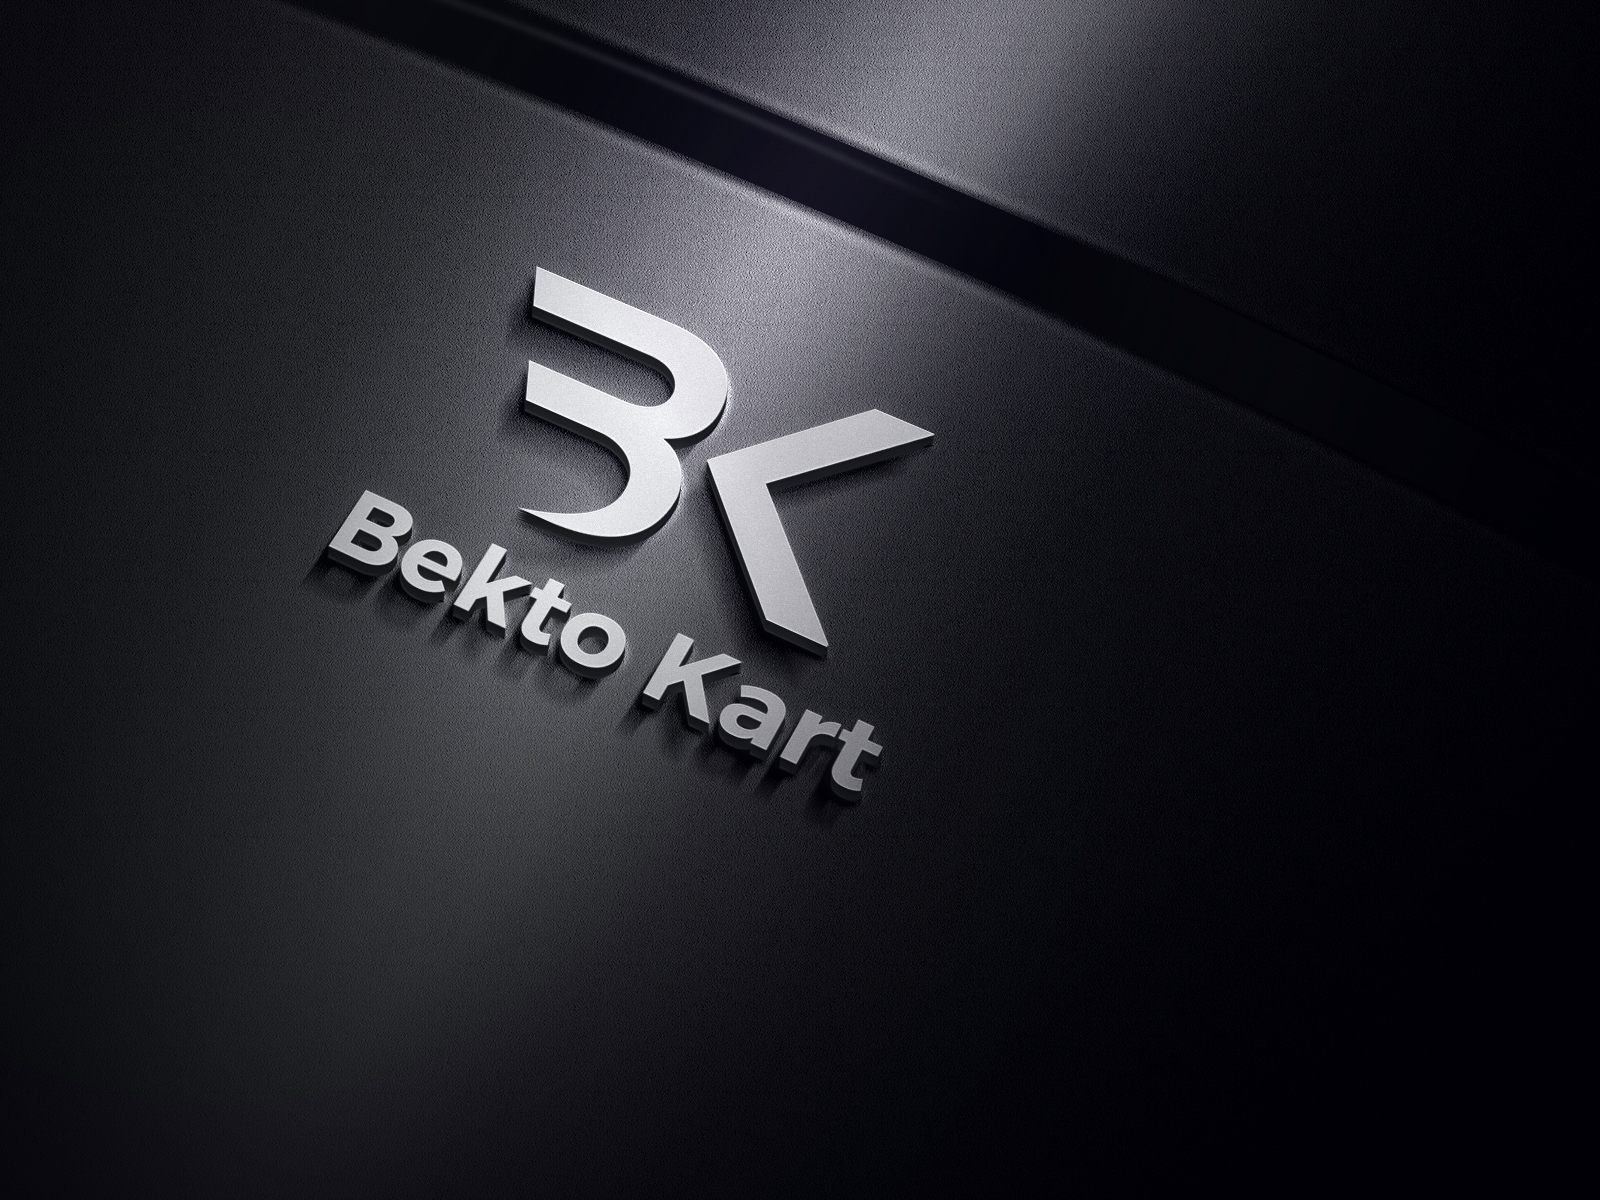 Bk logo monogram with emblem shield design Vector Image